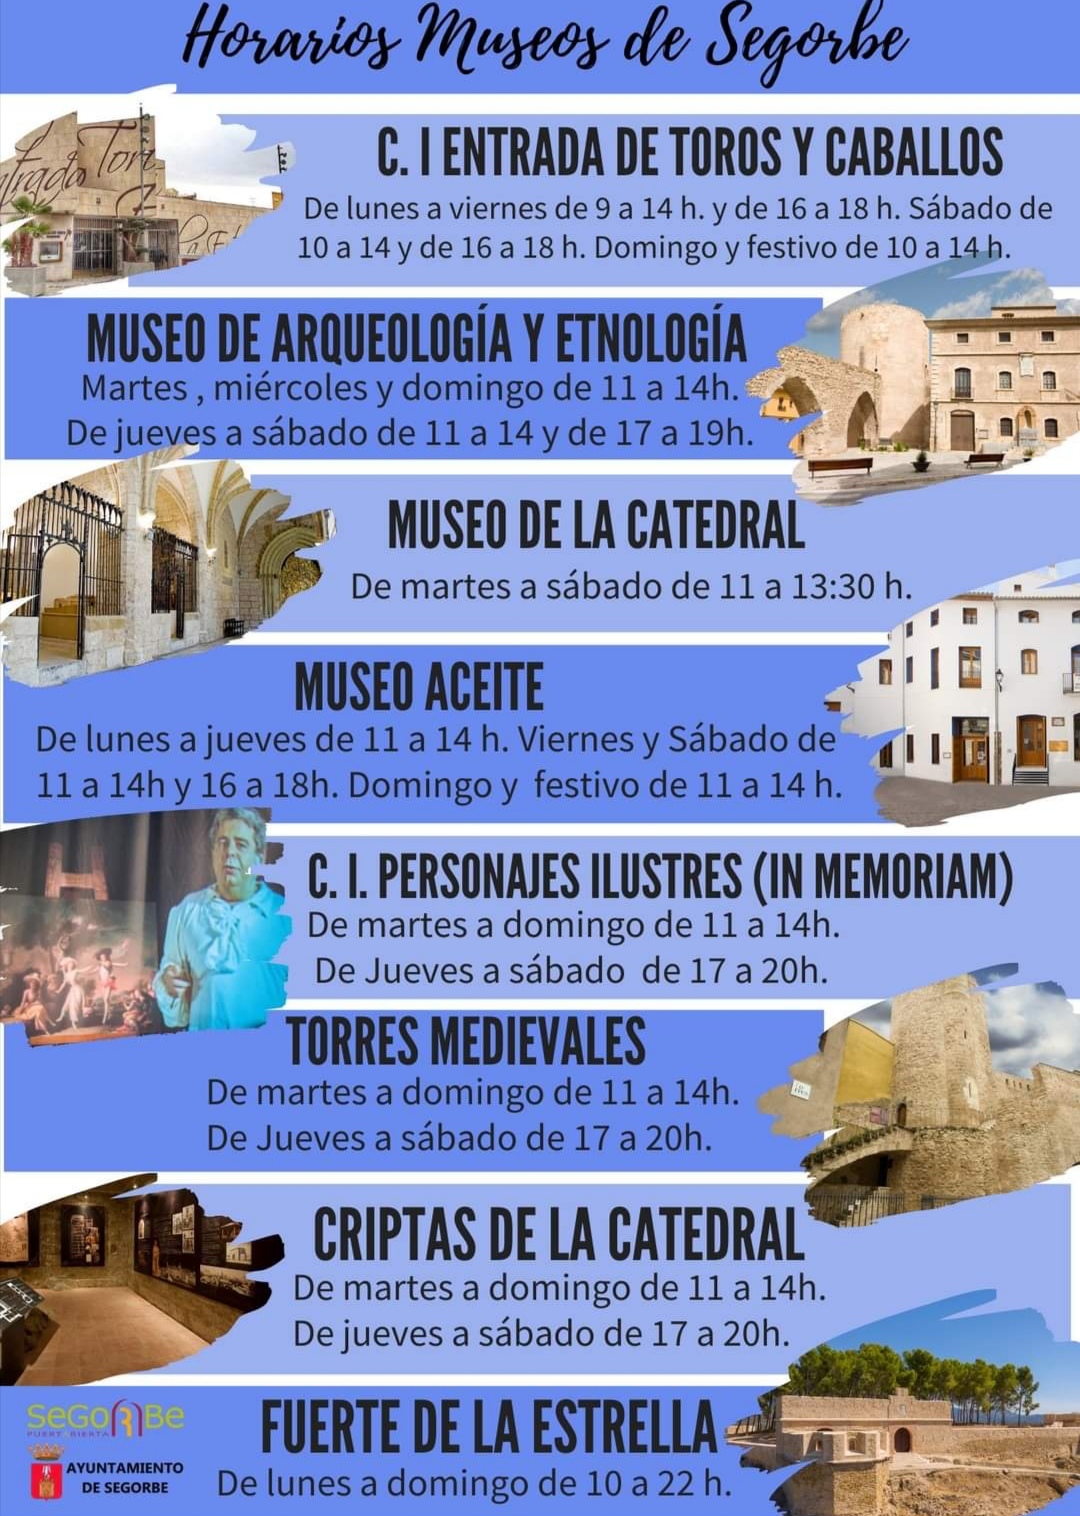 HORARIOS MUSEOS DE SEGORBE